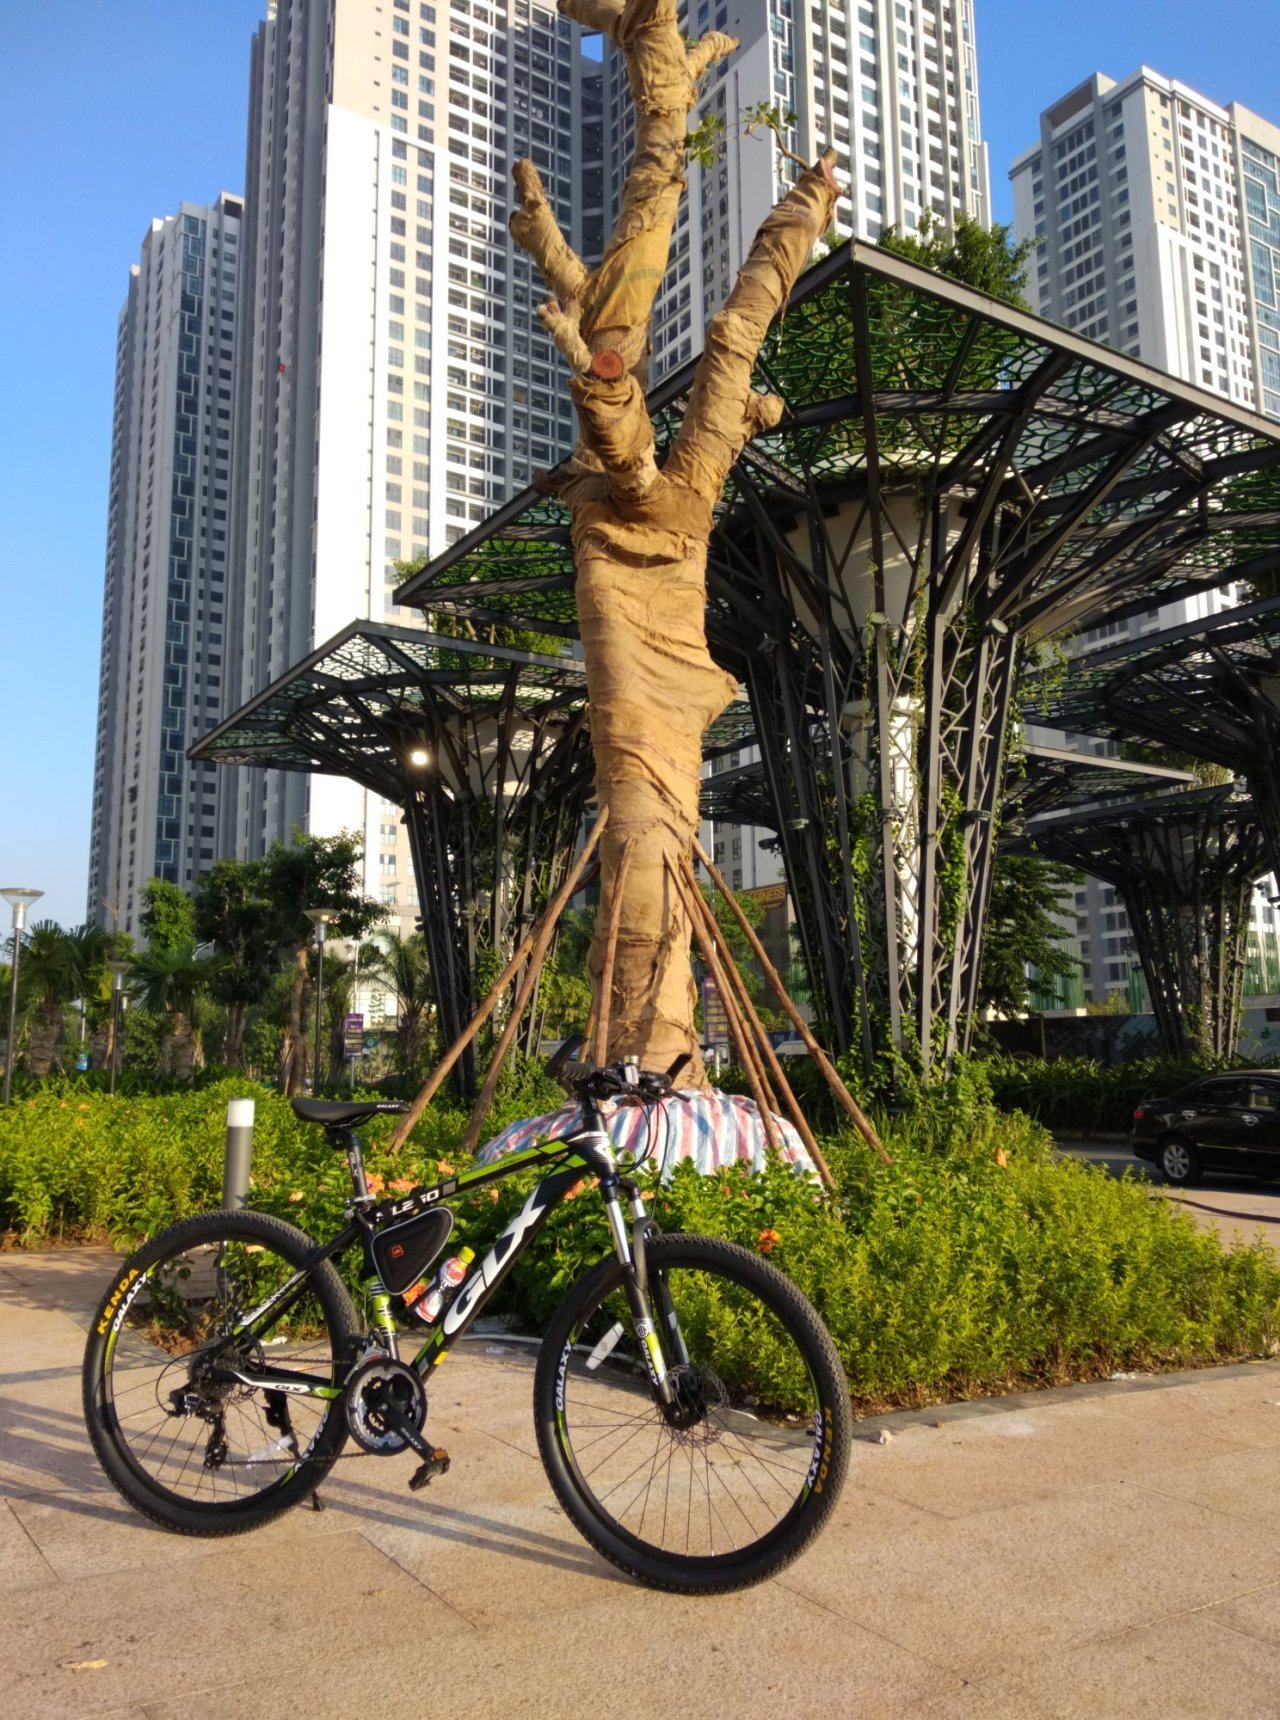 Thú vui chạy xe đạp thể thao của người trung niên  Xe đạp Giant  International  NPP độc quyền thương hiệu Xe đạp Giant Quốc tế tại Việt Nam